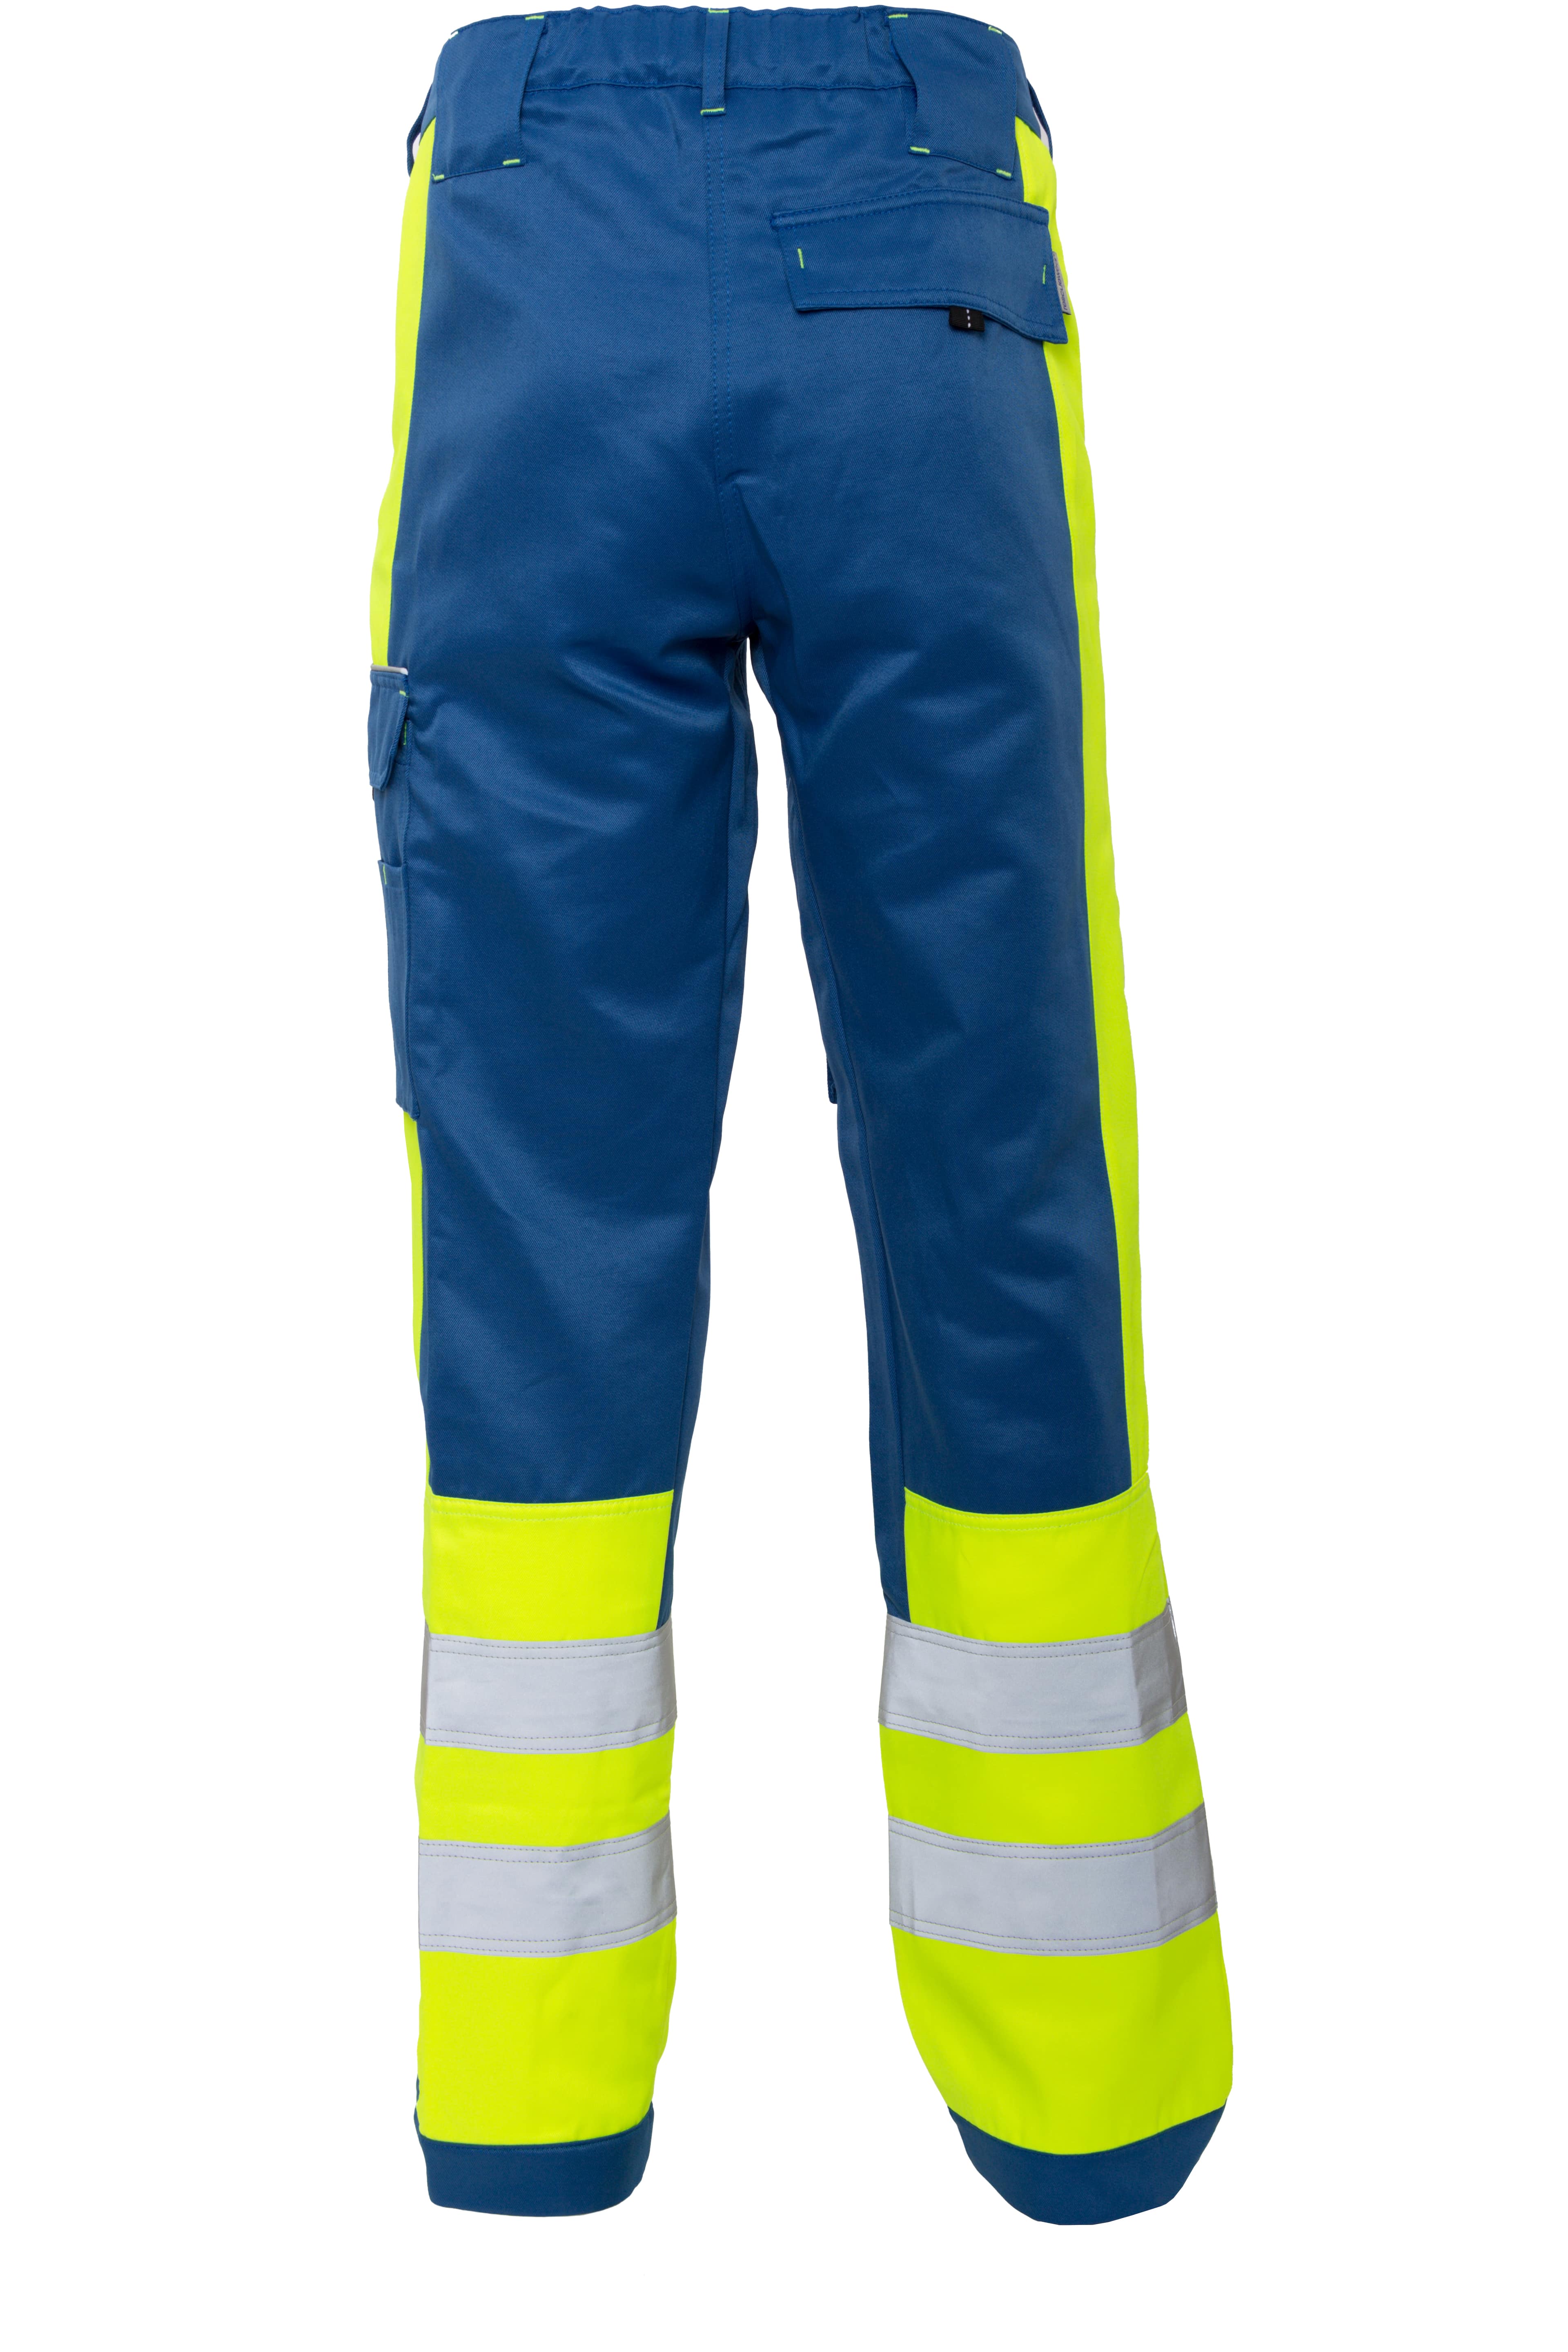 Rescuewear Unisex Hose Dynamic HiVis Klasse 1 Kobaltblau / Neon Gelb - 44